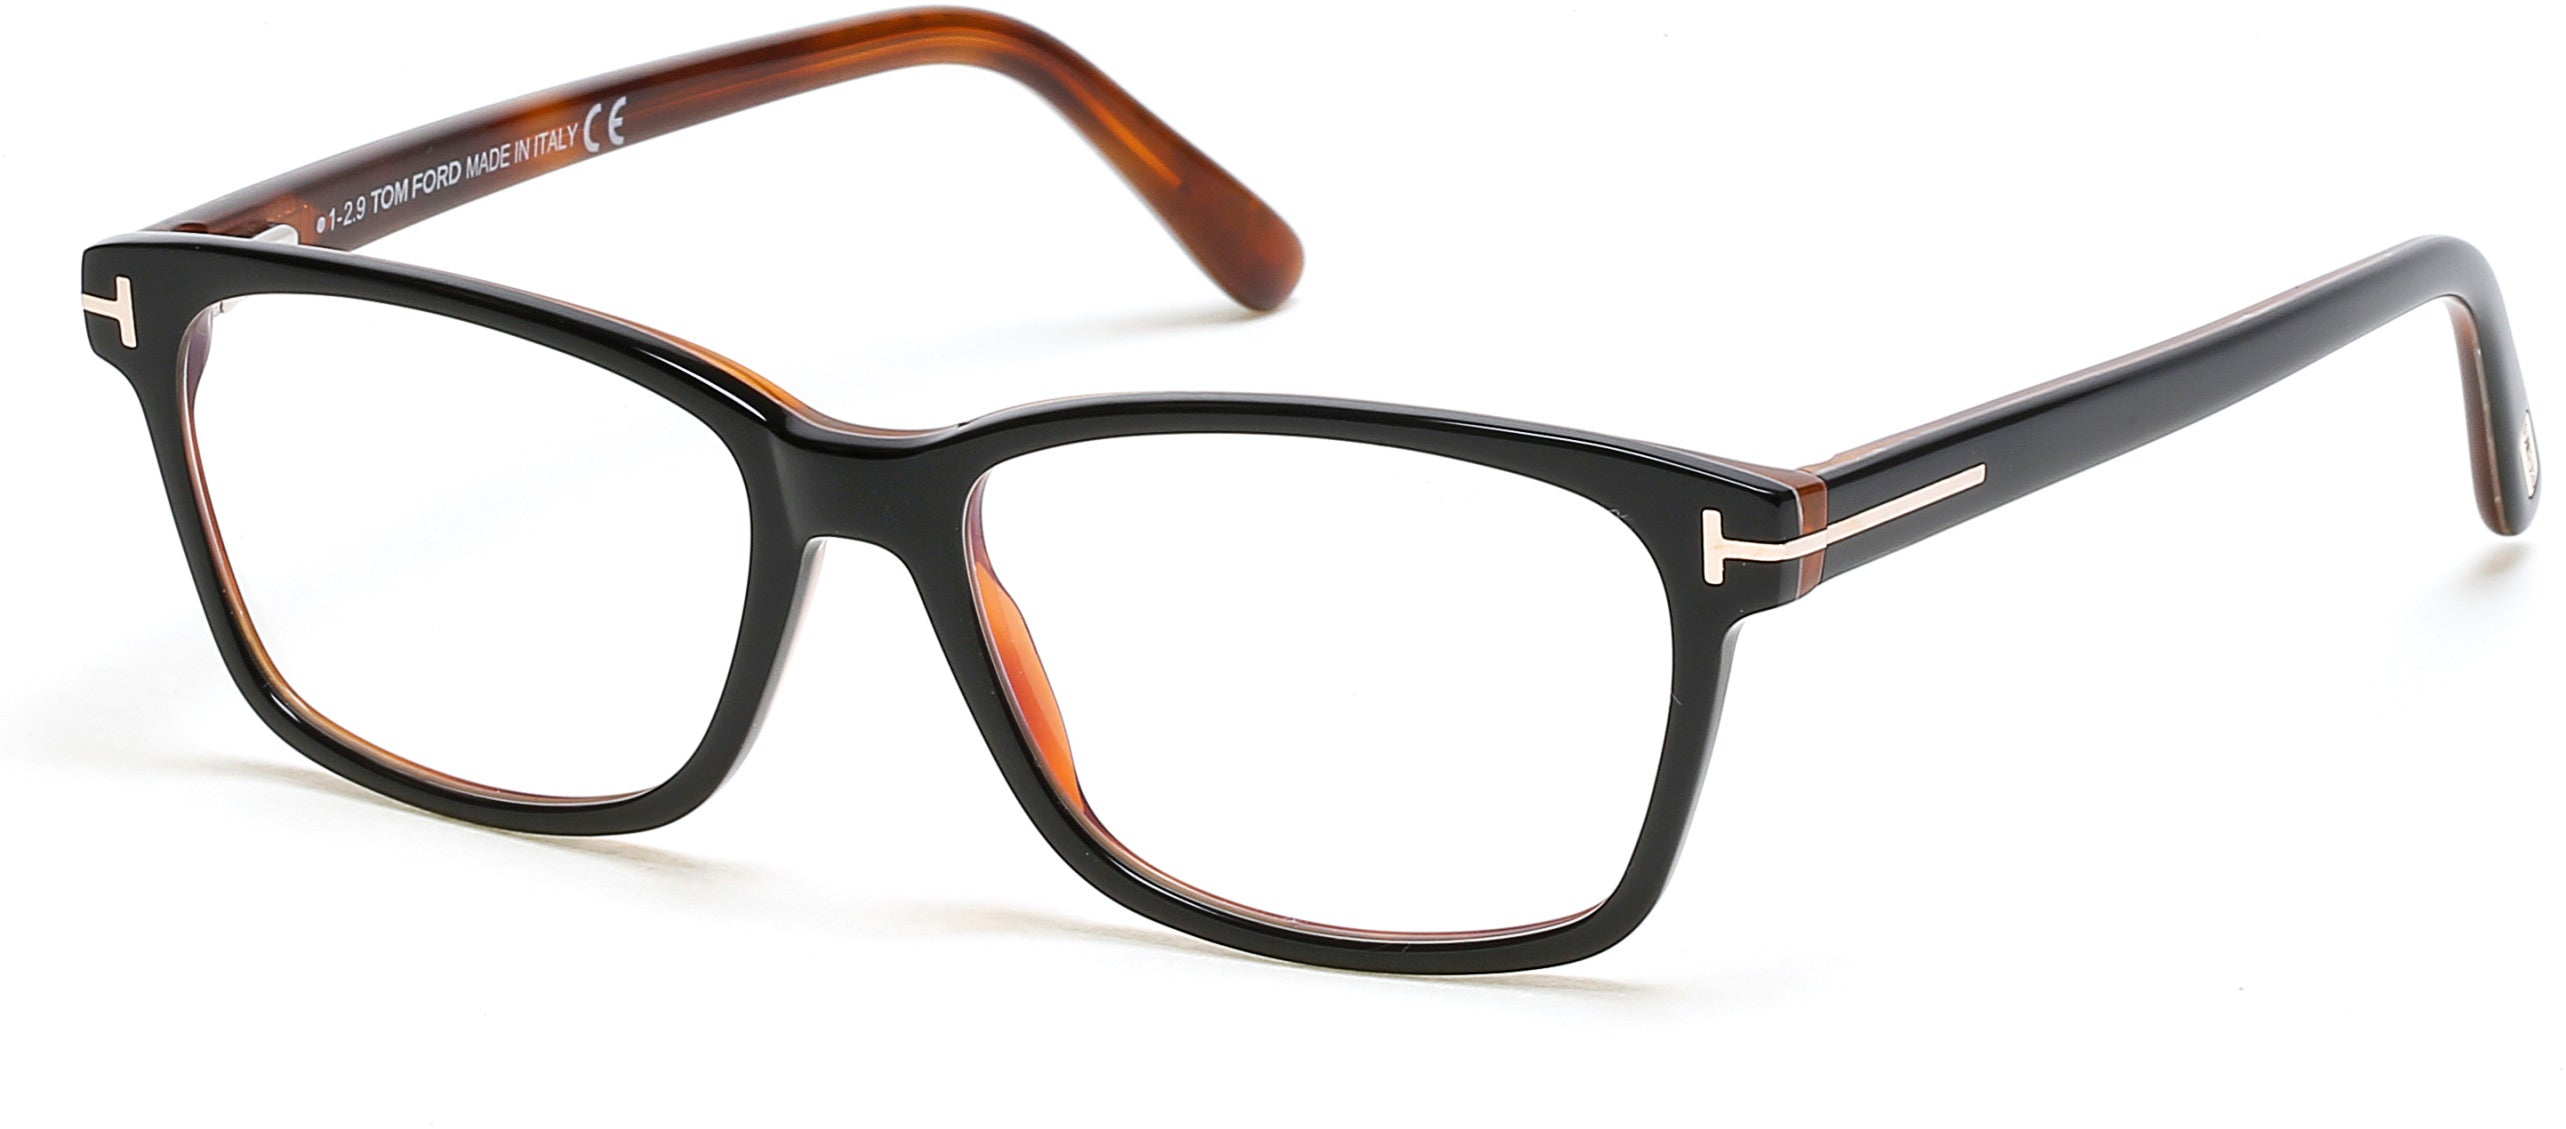 Tom Ford FT5713-B Rectangular Eyeglasses 005-005 - Matte Black/ Blue Block Lenses